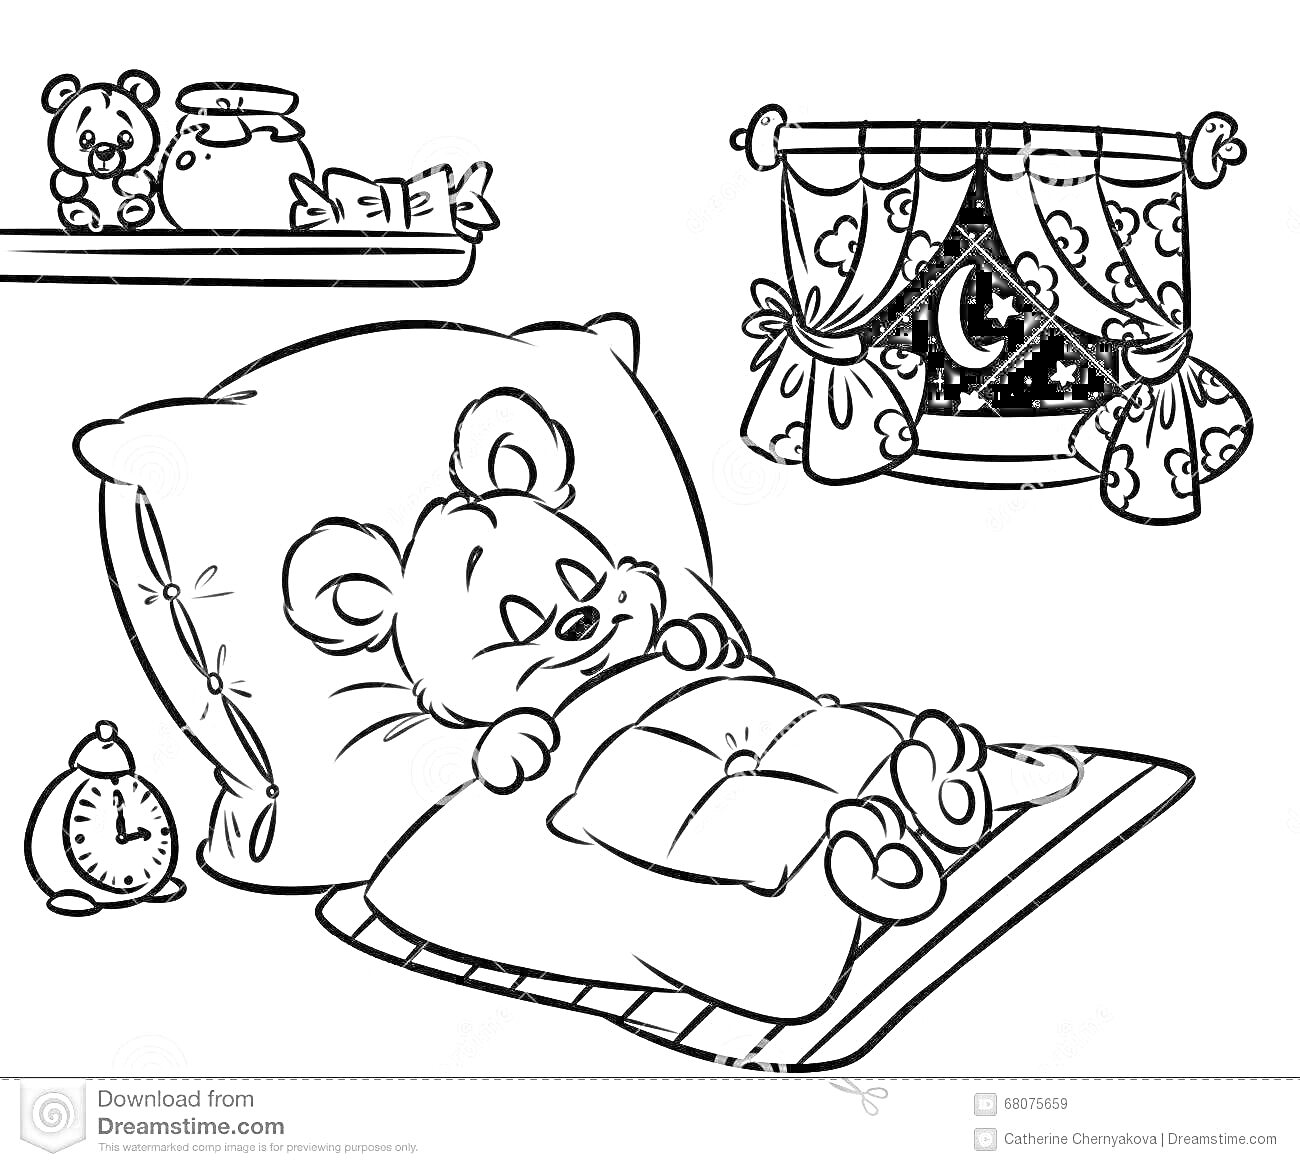 Раскраска Медведь под одеялом в спальне с подушкой, будильником и ночным пейзажем за окном